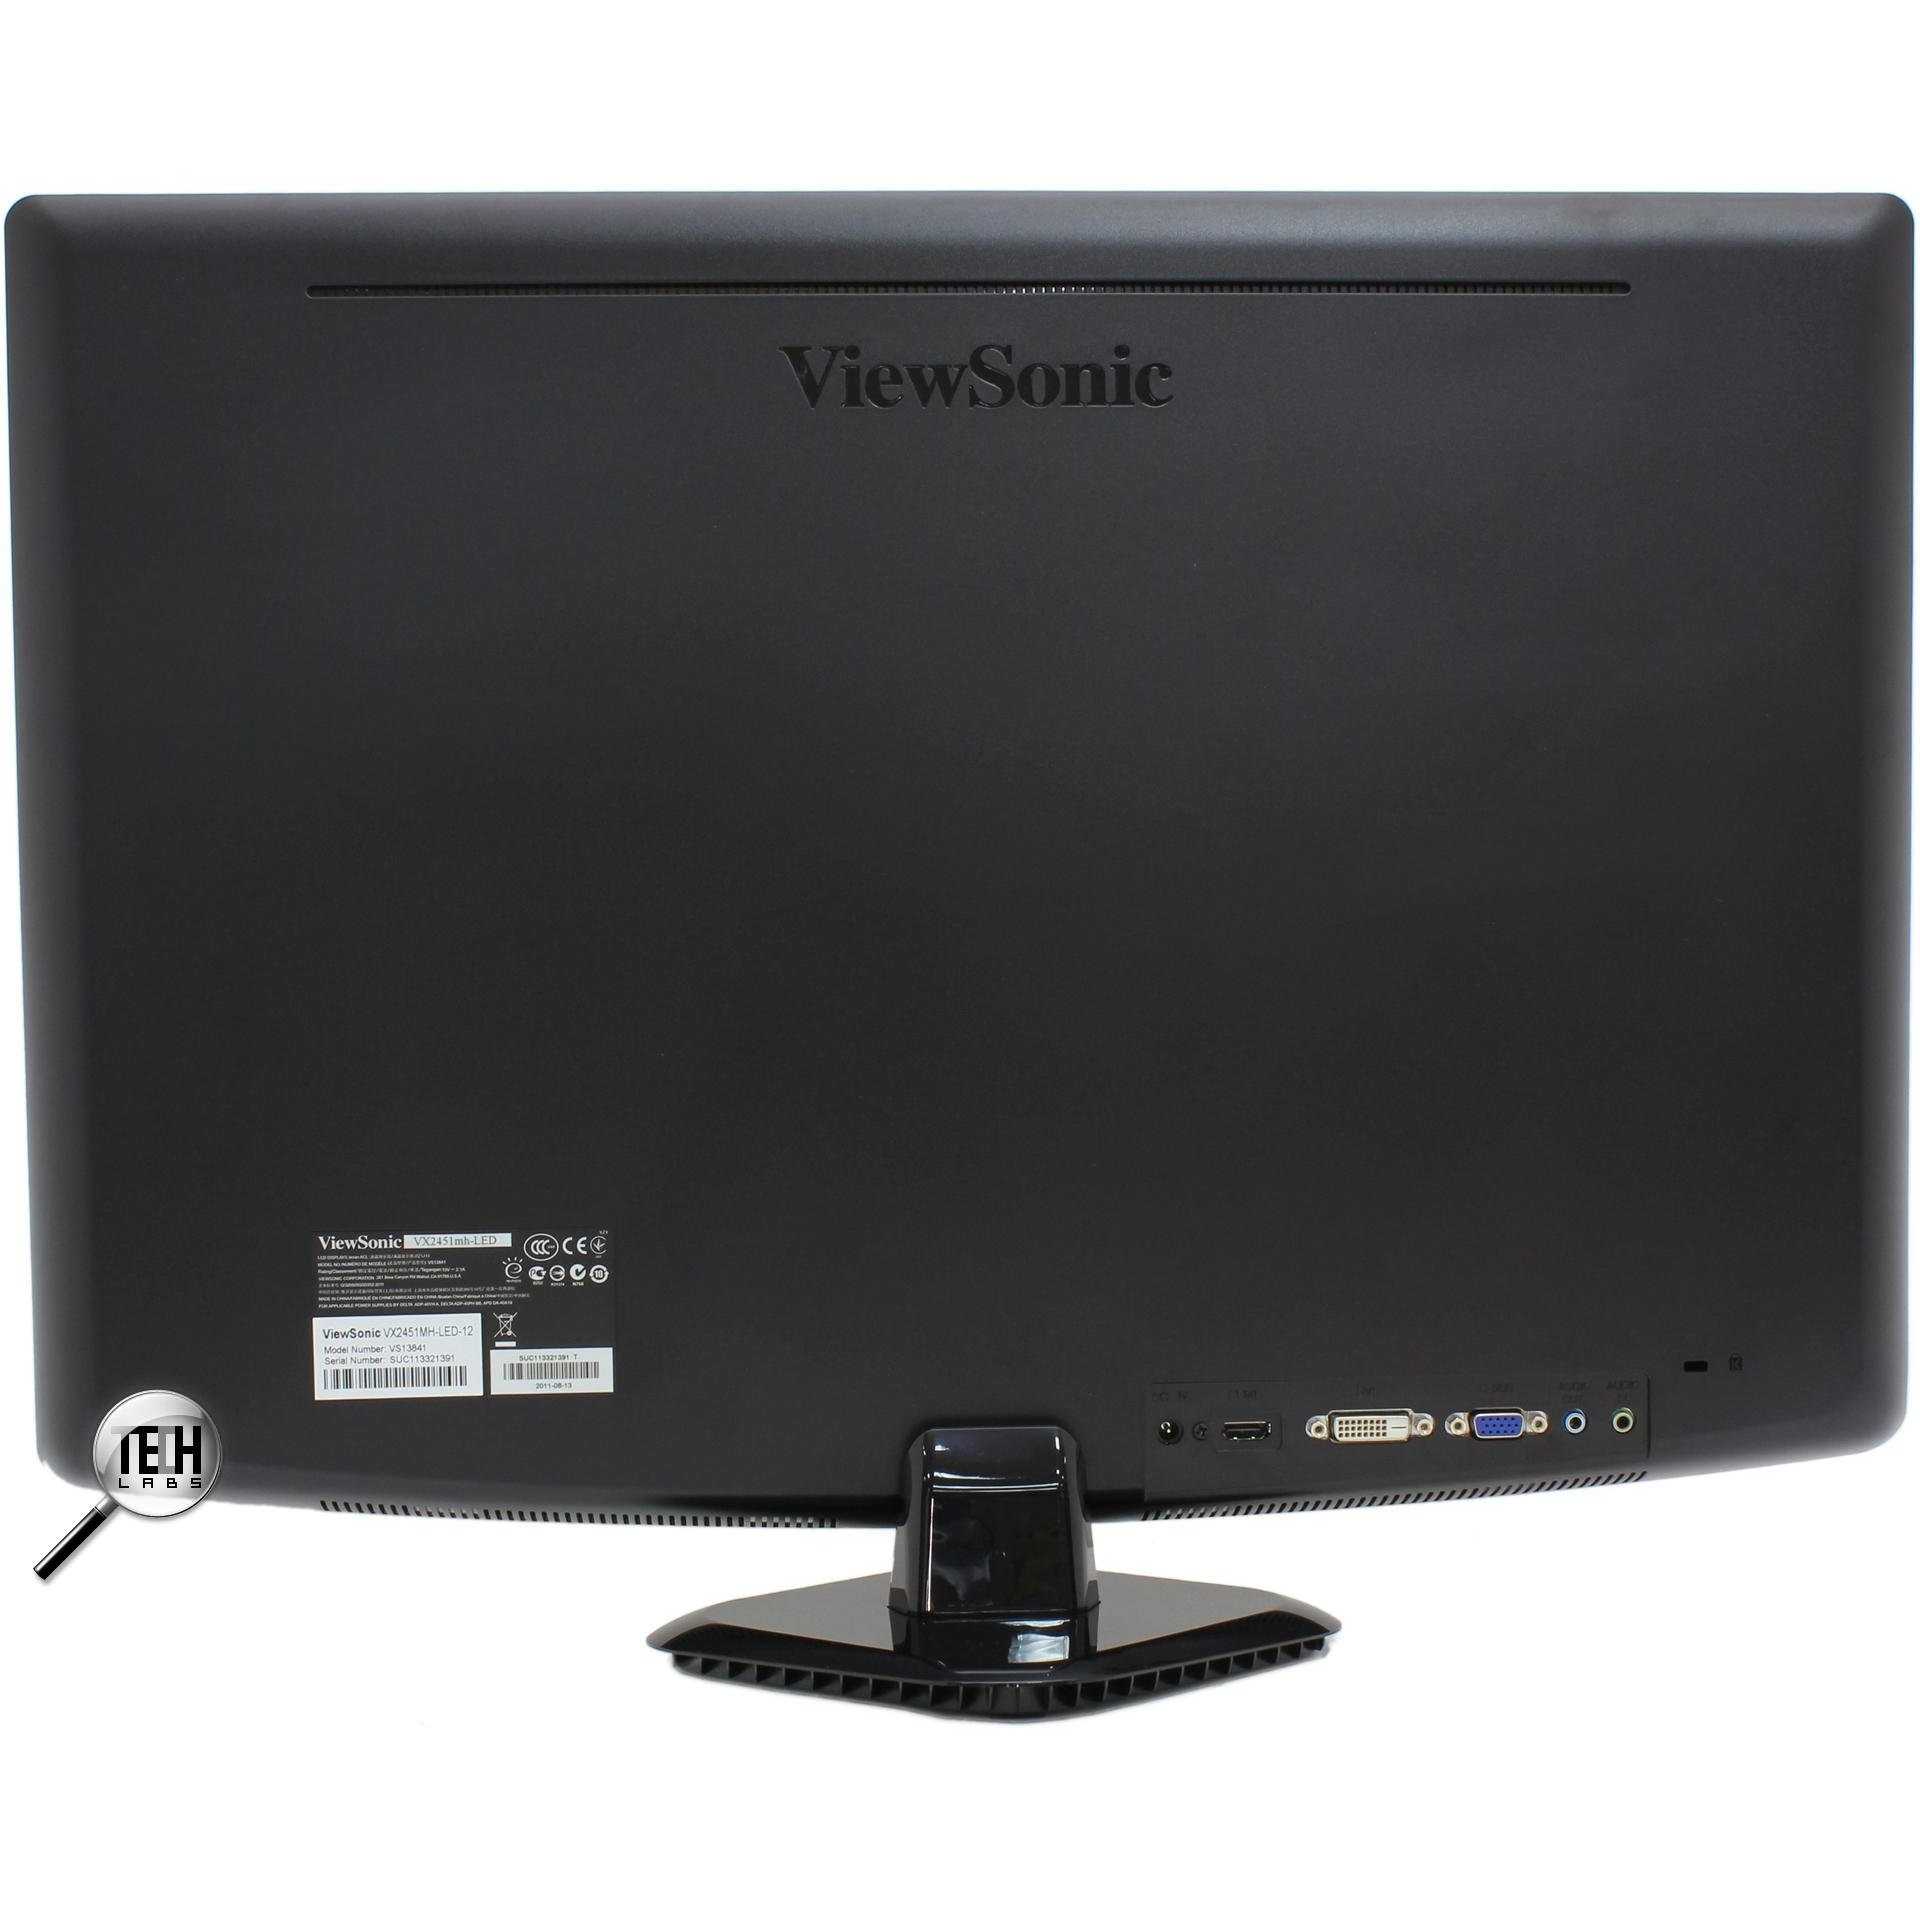 Viewsonic vx2453mh-led